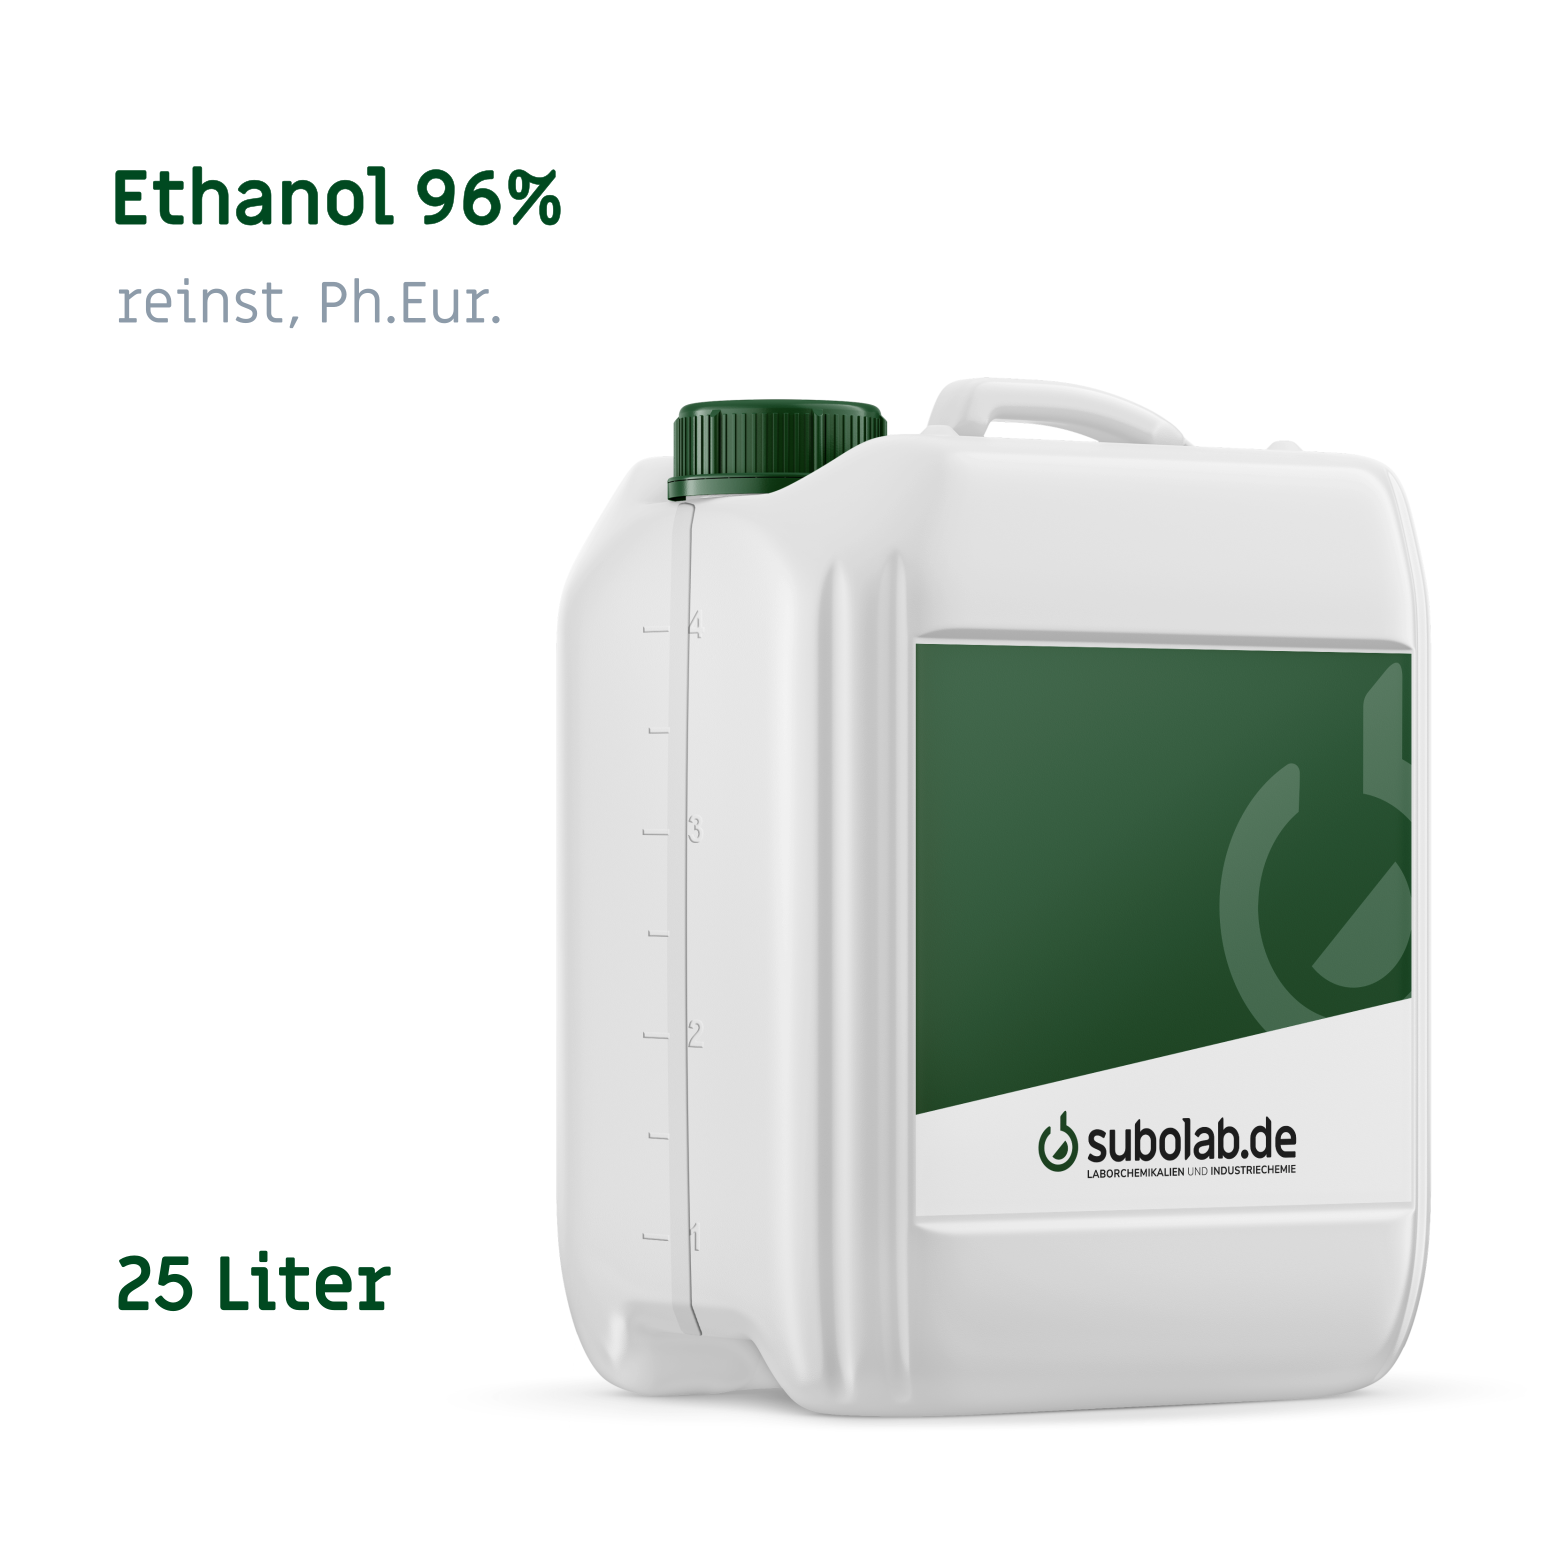 Bild von Ethanol 96% reinst, Ph.Eur. (25 Liter)